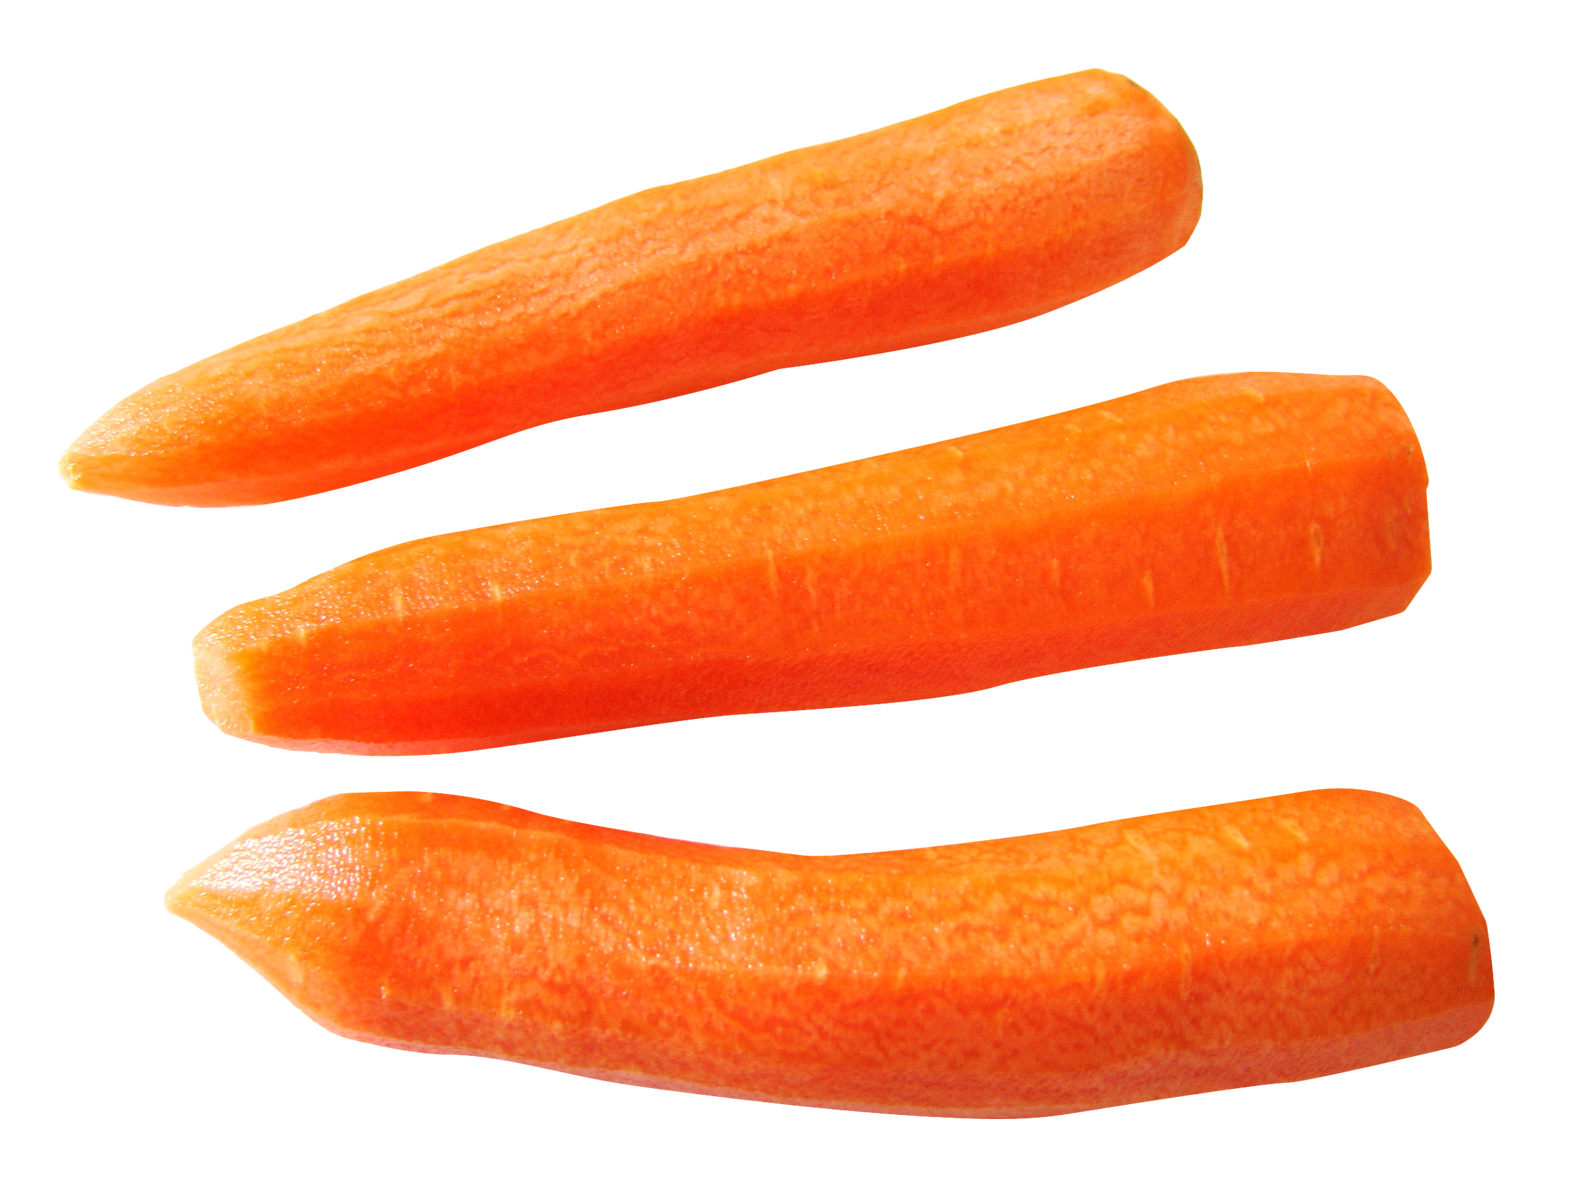 Juice clipart gajar. Carrot png transparent images